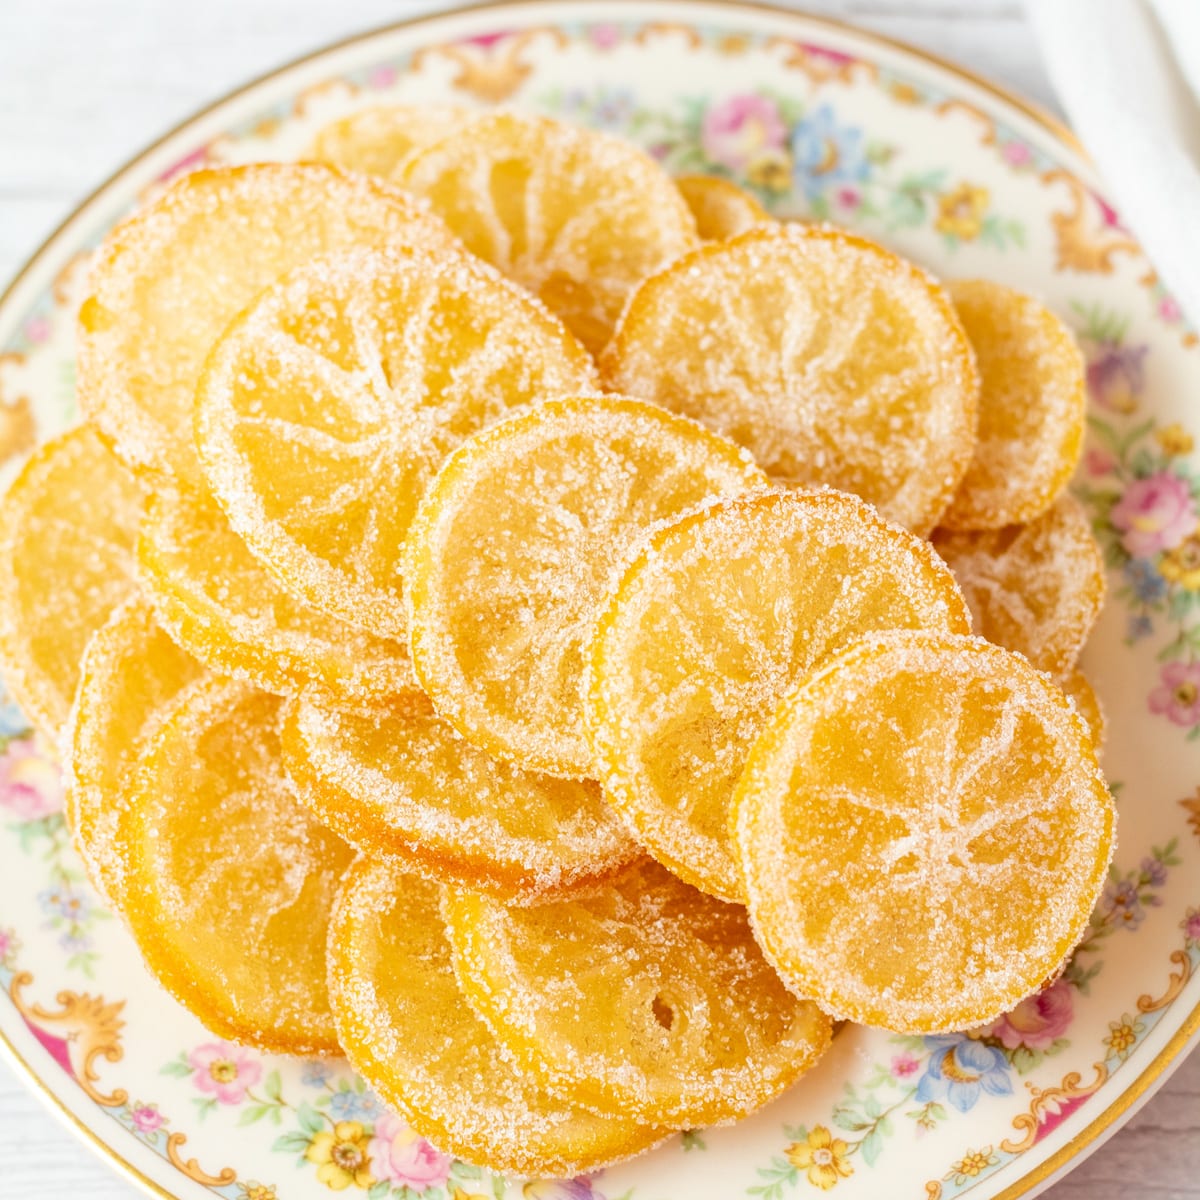 Şekerlenmiş limon dilimlerinin kare görüntüsü.